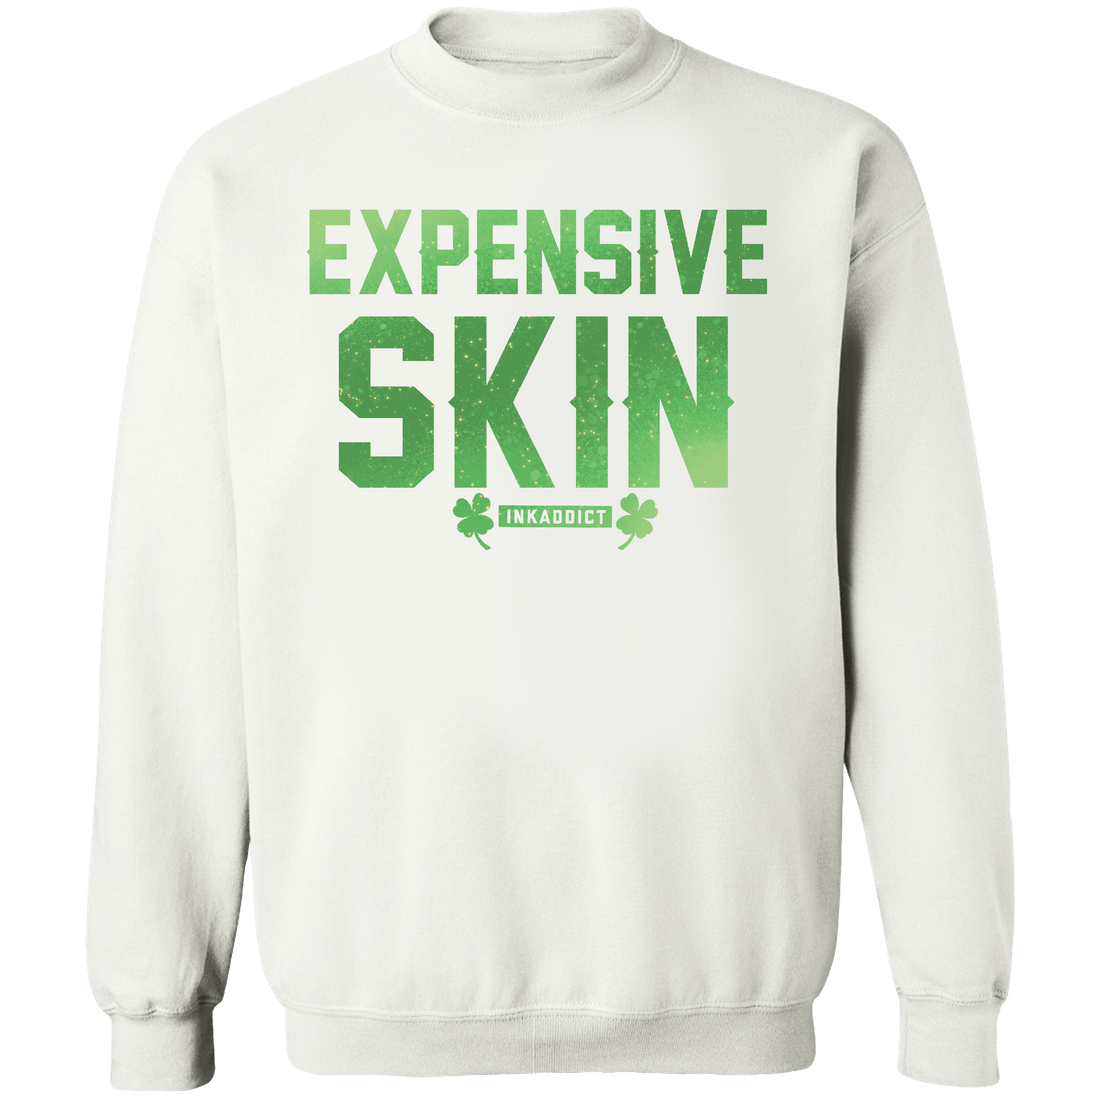 Irish Expensive Skin Crew